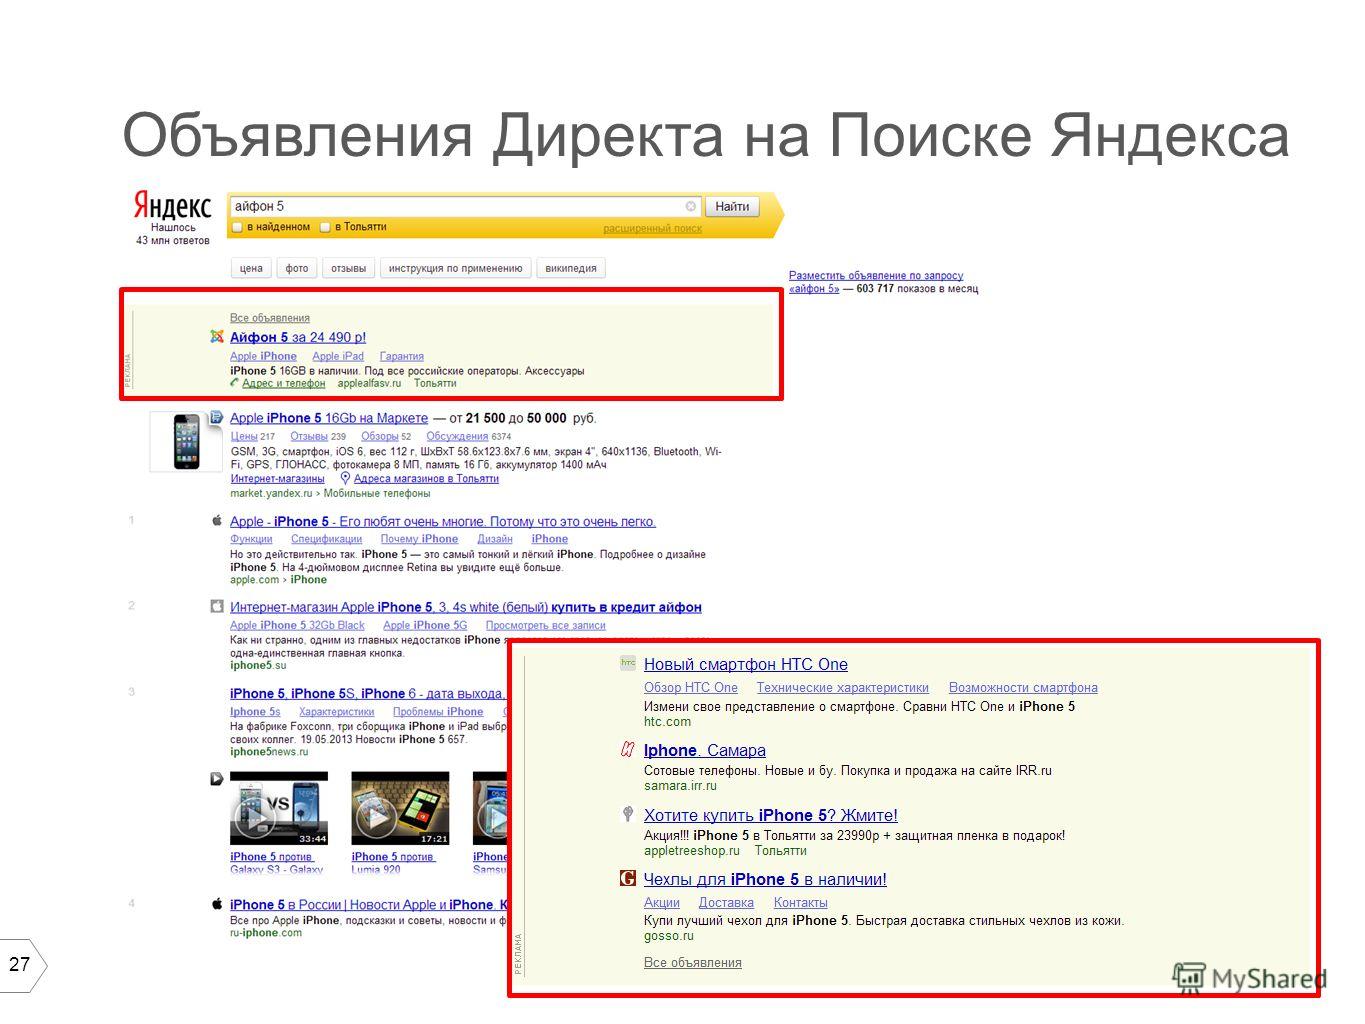 27 Объявления Директа на Поиске Яндекса